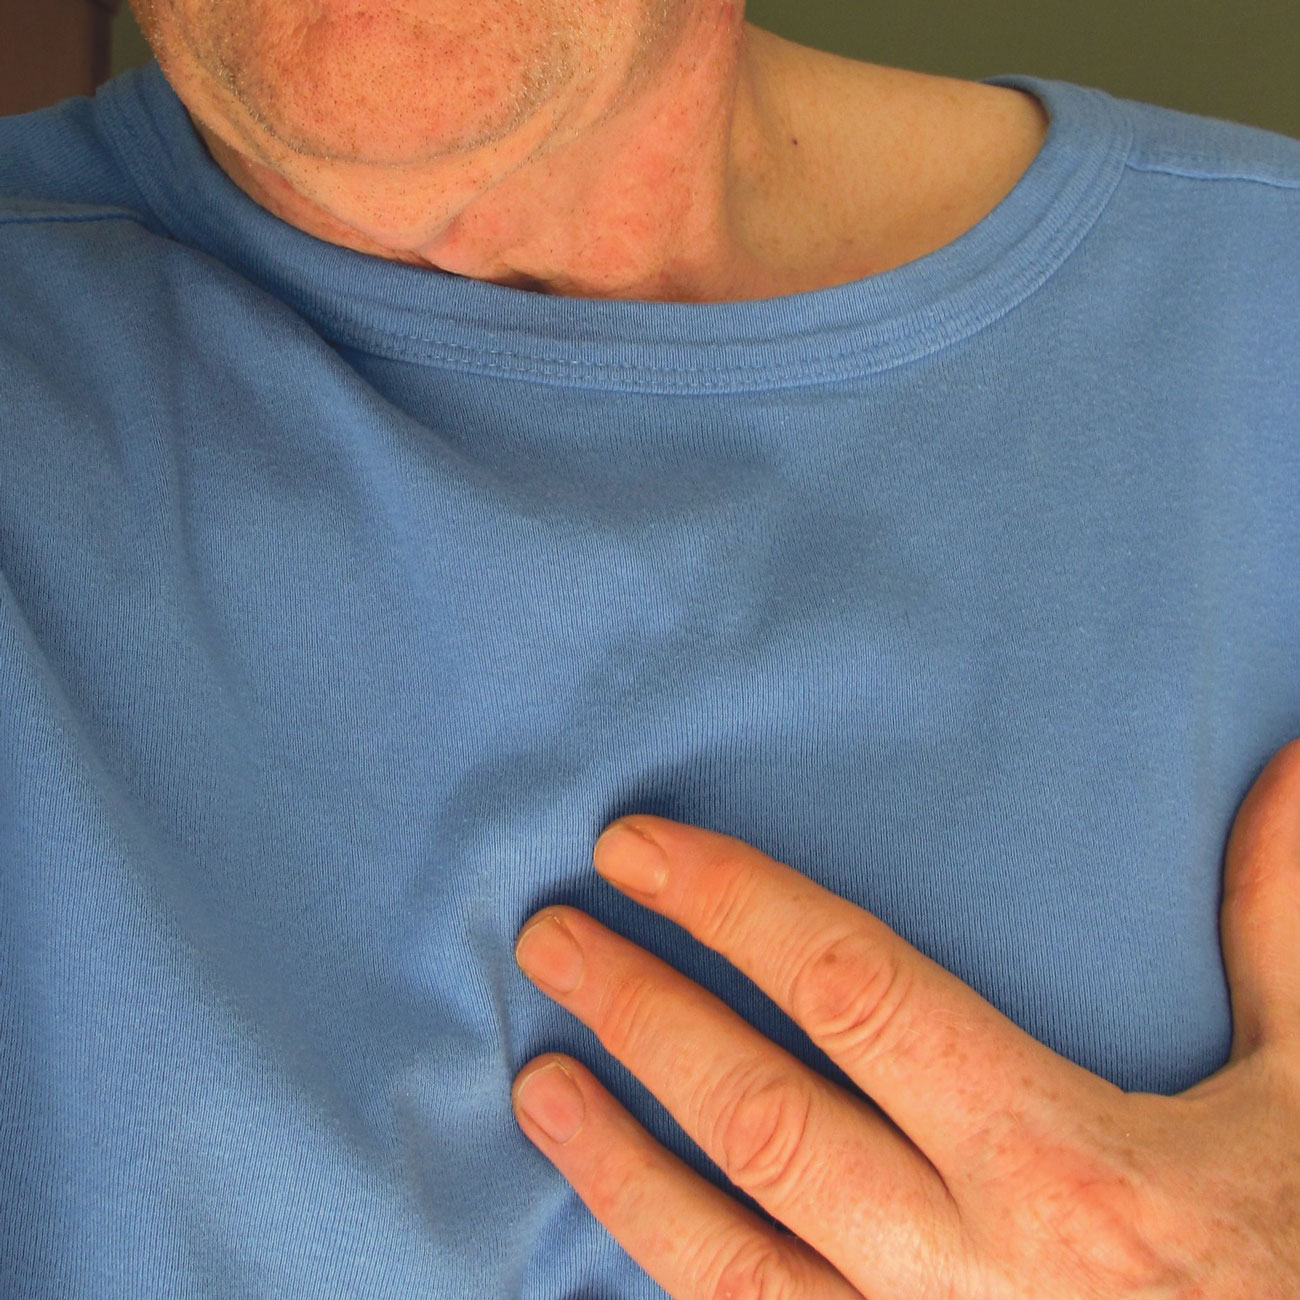 Nahaufnahme: Brustbereich eines Patienten, der die Hand auf das Herz gelegt hat.